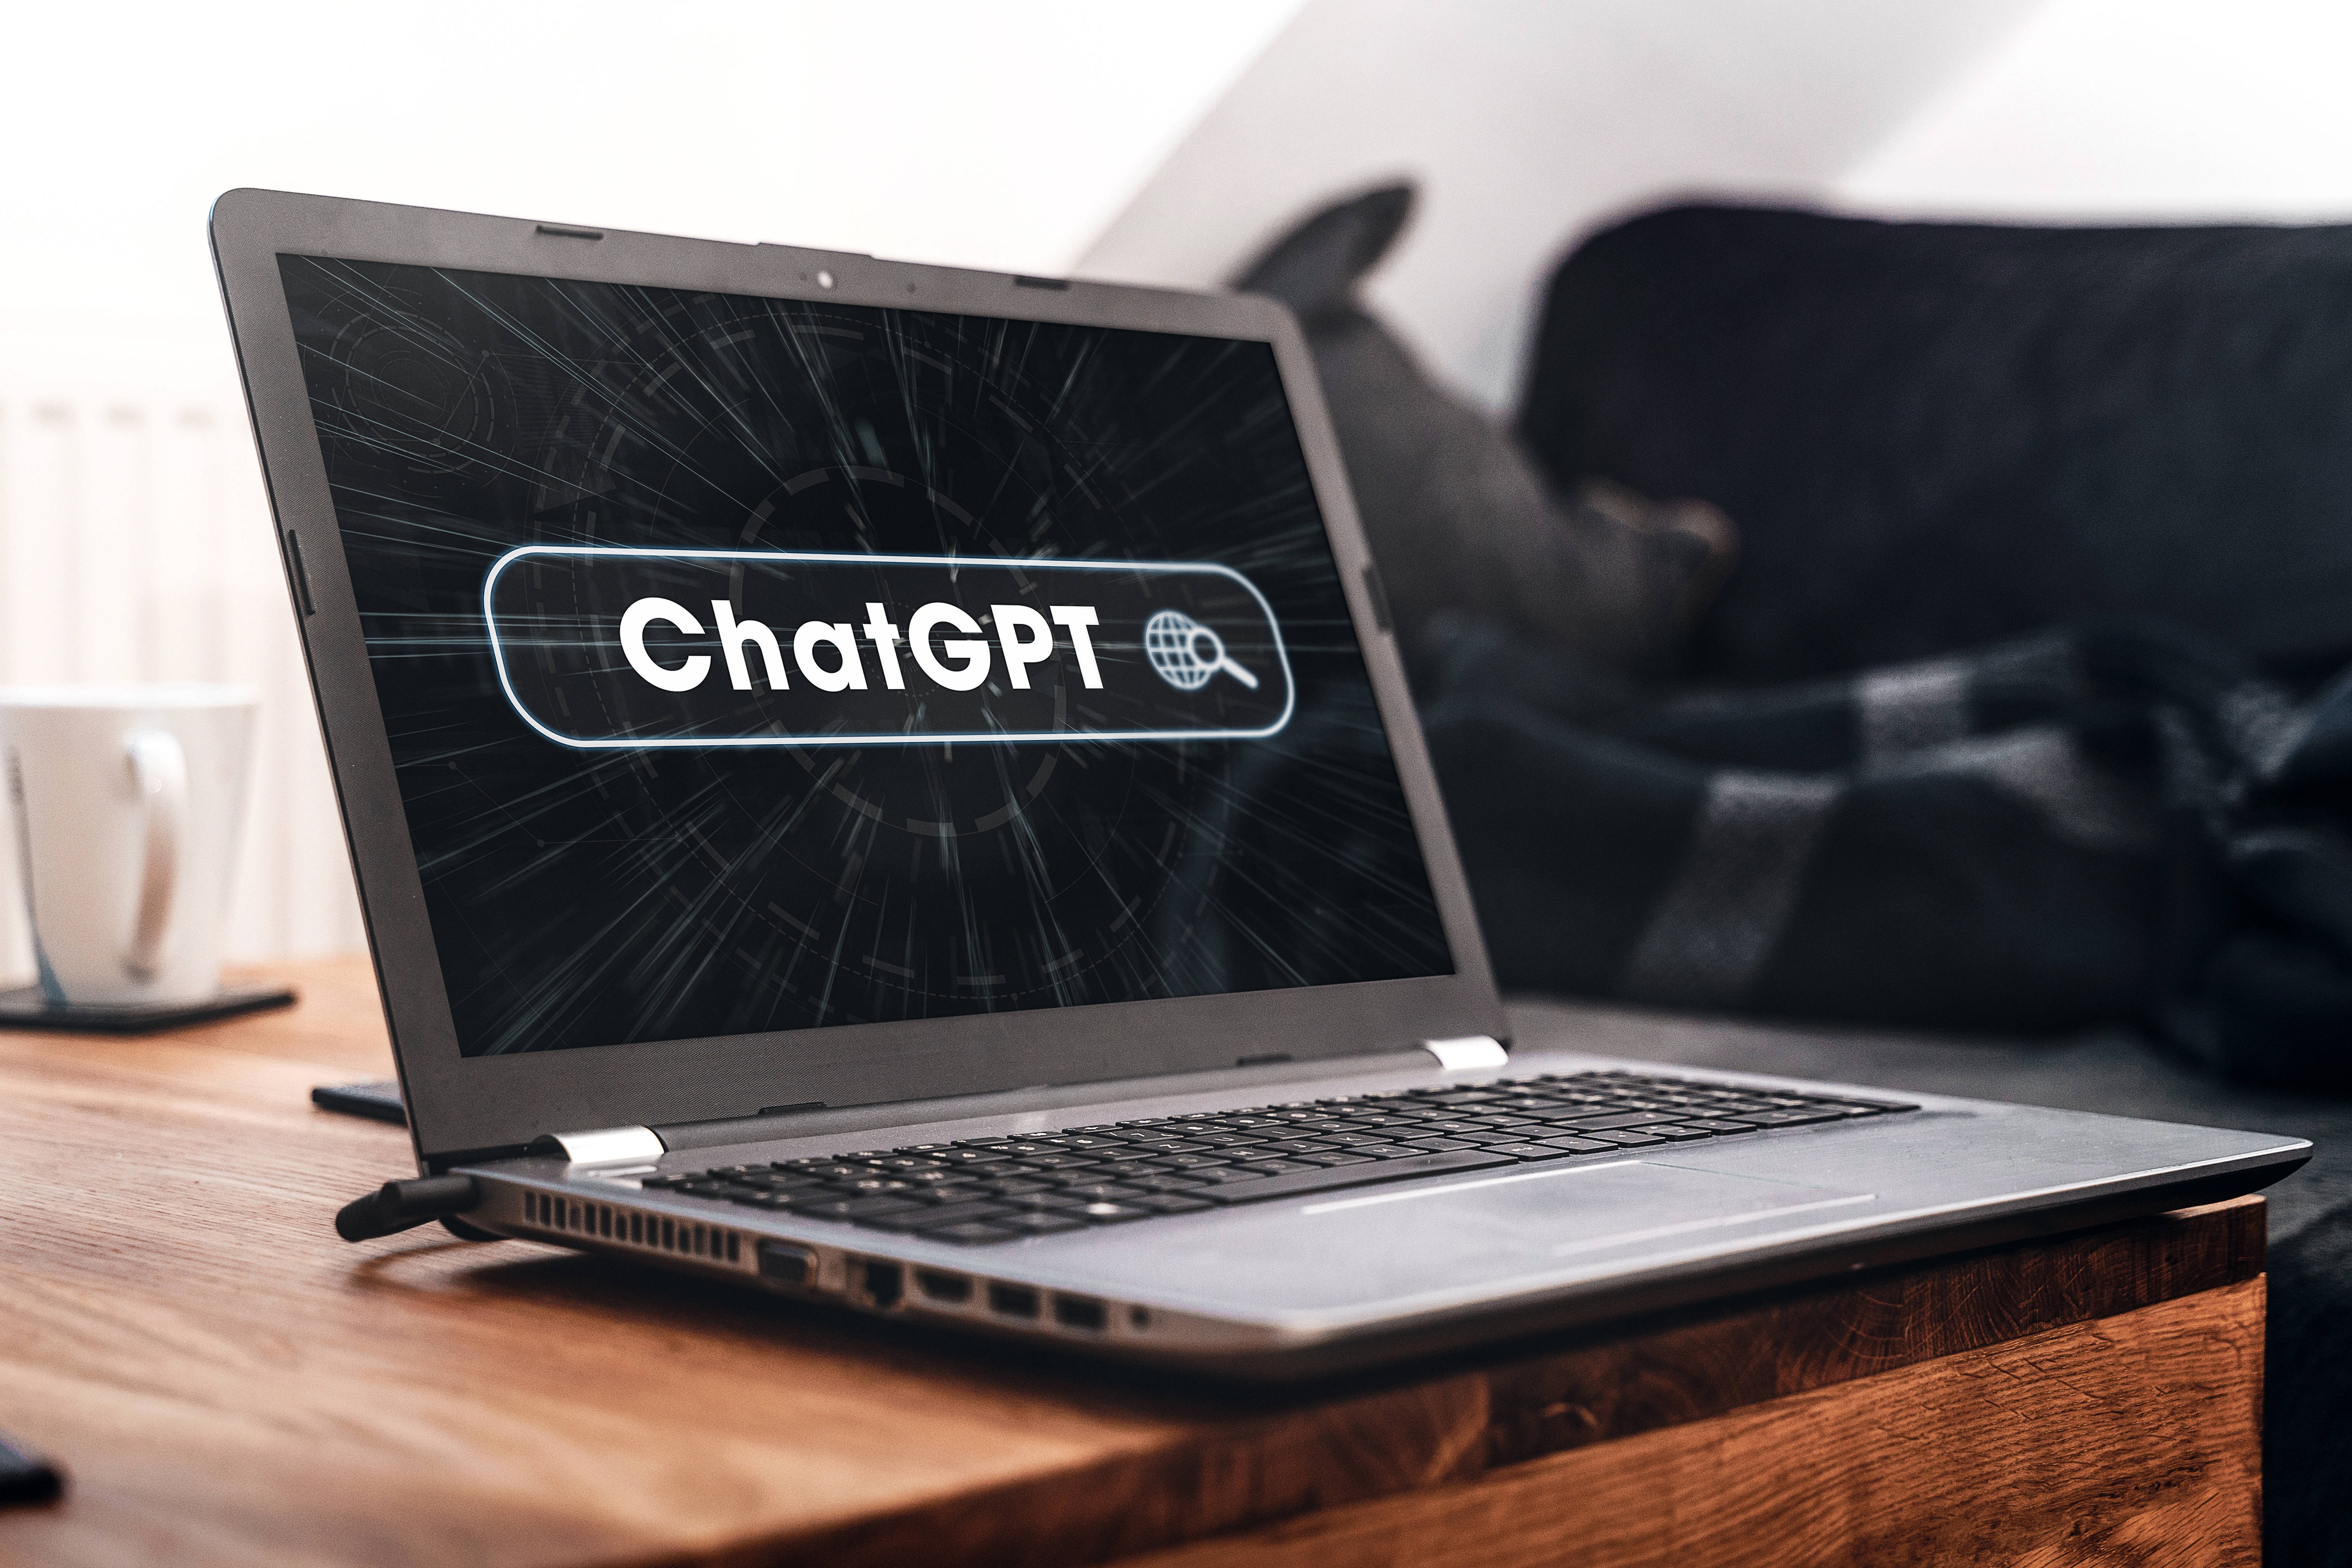 Benutzerwachstum - KI-Software ChatGPT ist am schnellsten wachsende Verbraucher-App der Geschichte